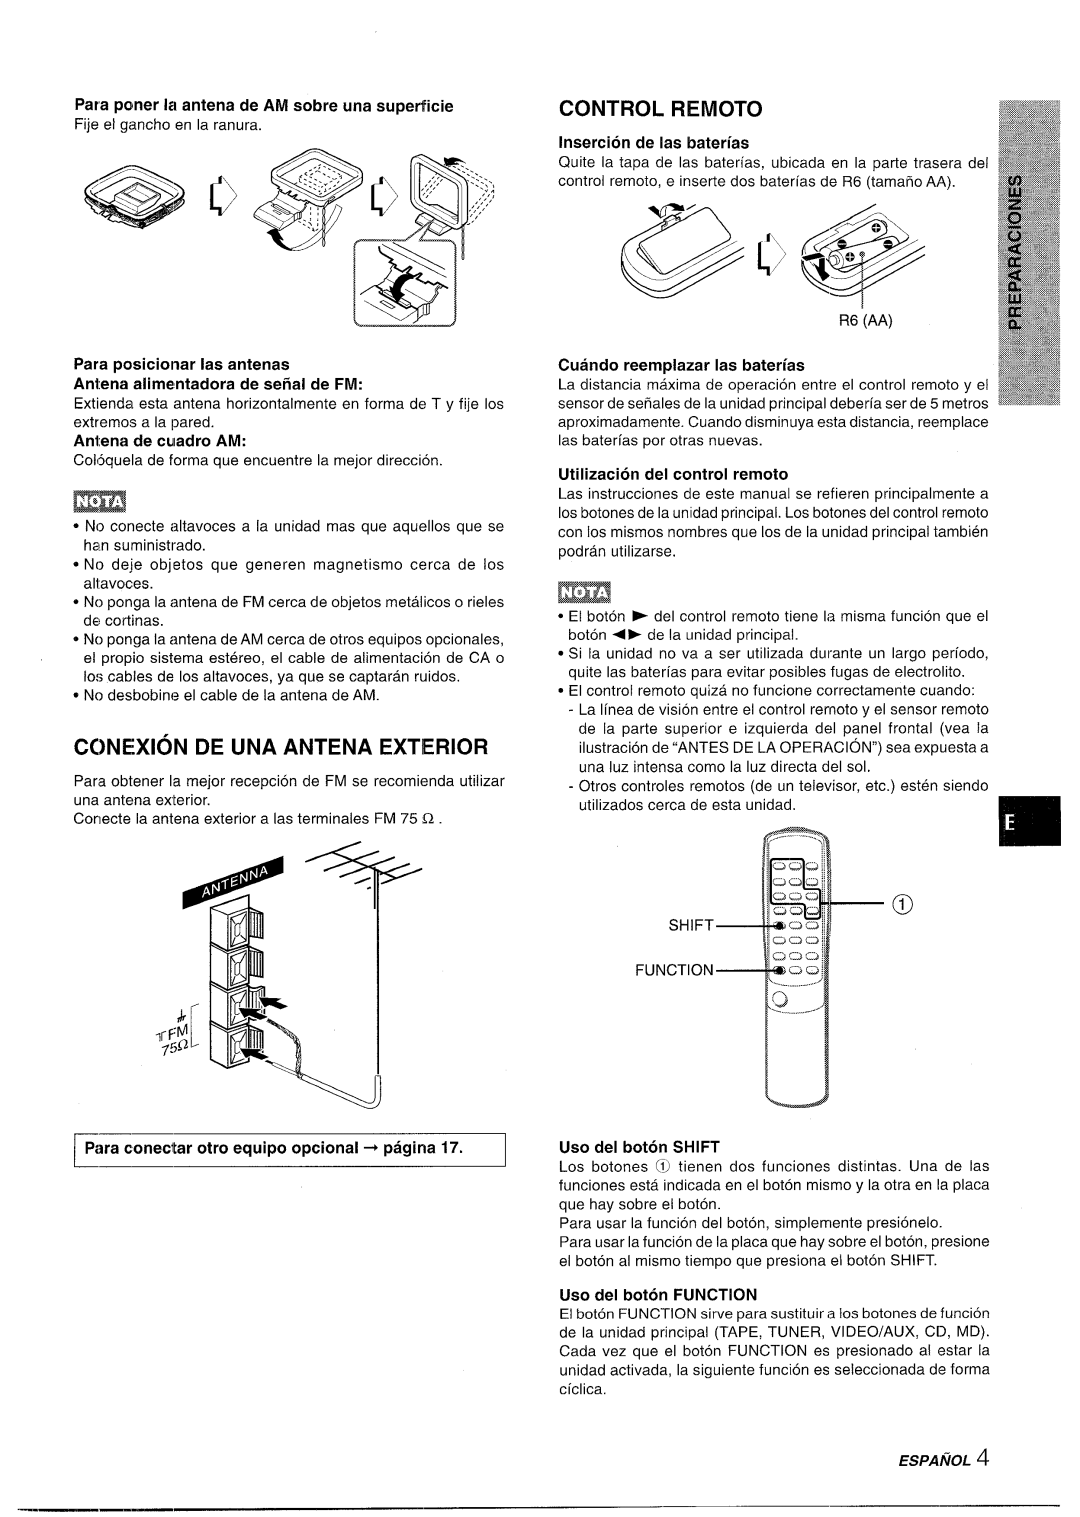 Aiwa XR-M35 manual Ccnexion De Una Antena Exterior, Control Remoto, Para conectar otro equipo optional + pagina, Espanol 